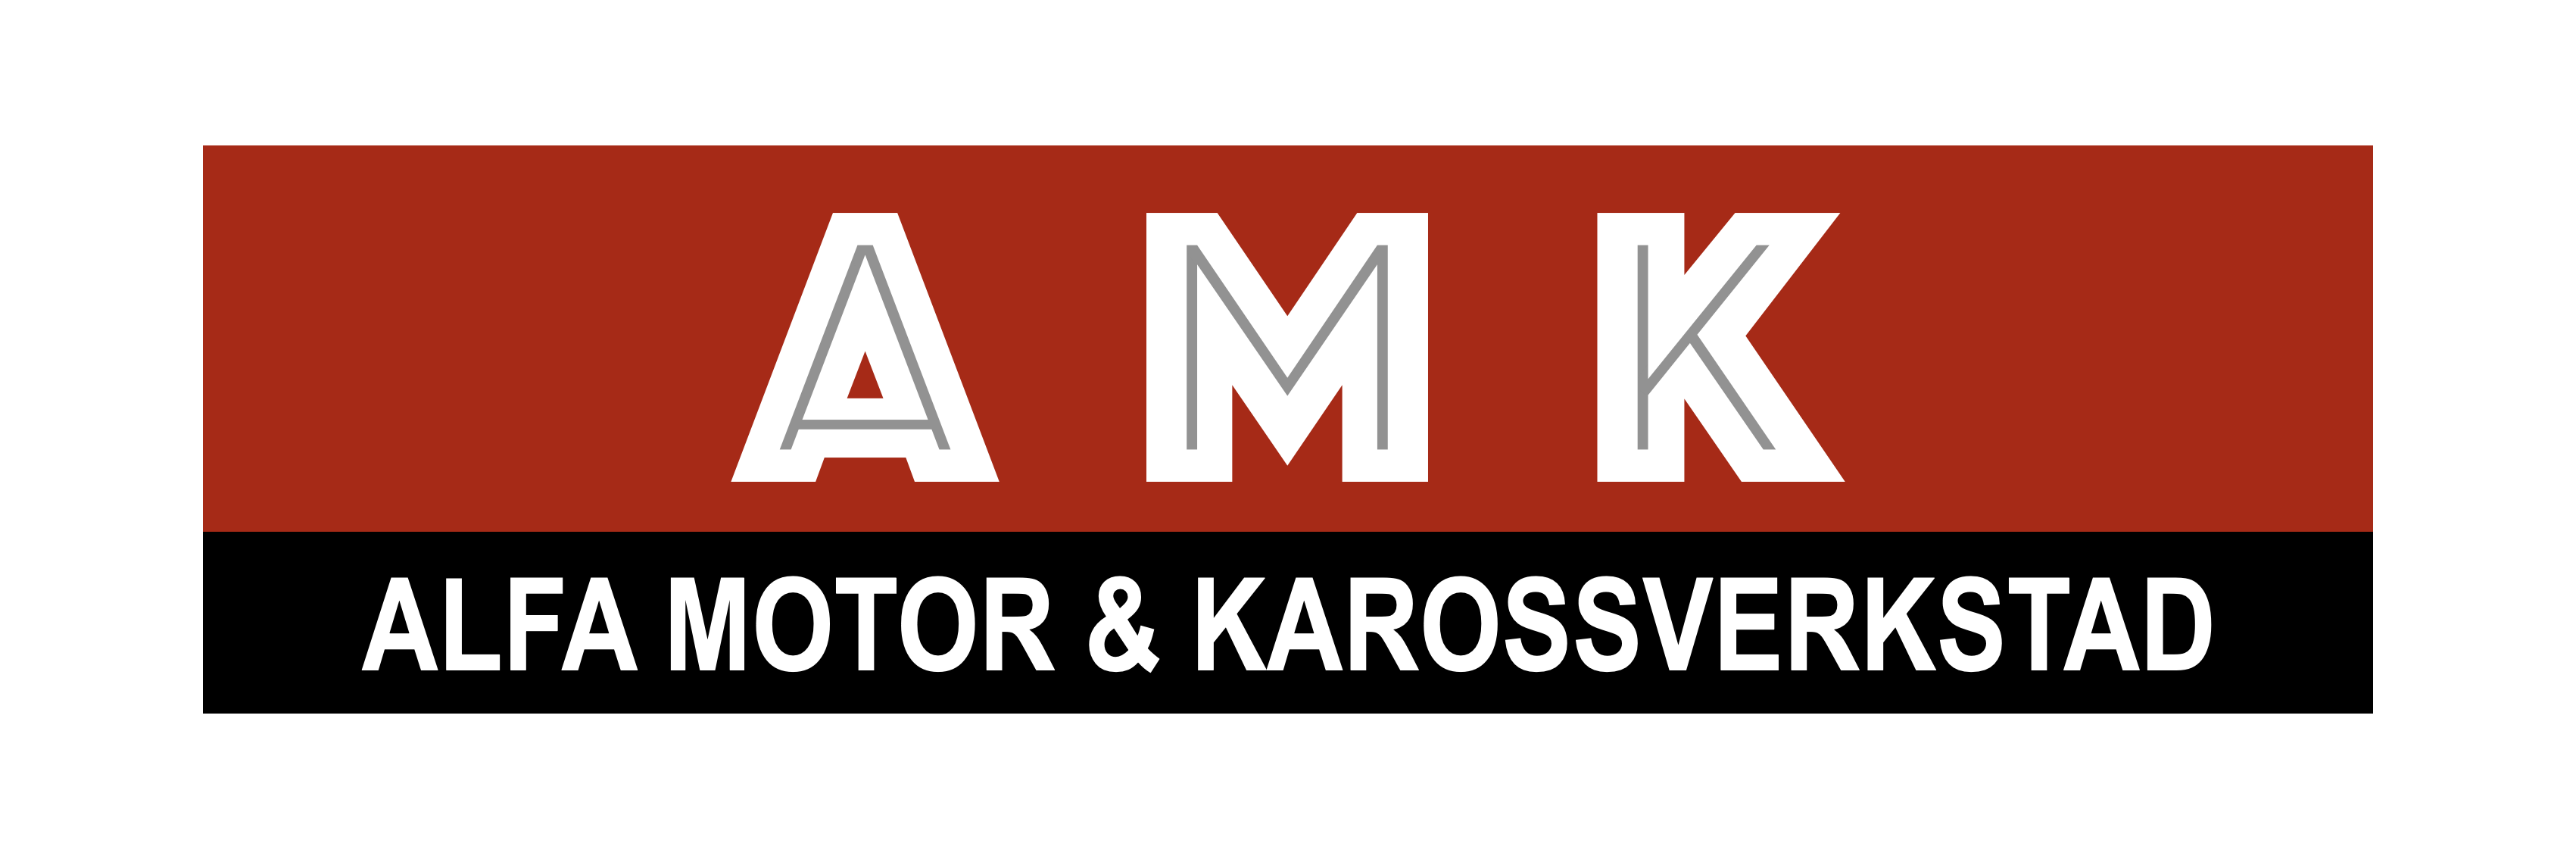 AMK - ALFA MOTOR & KAROSSVERKSTAD.